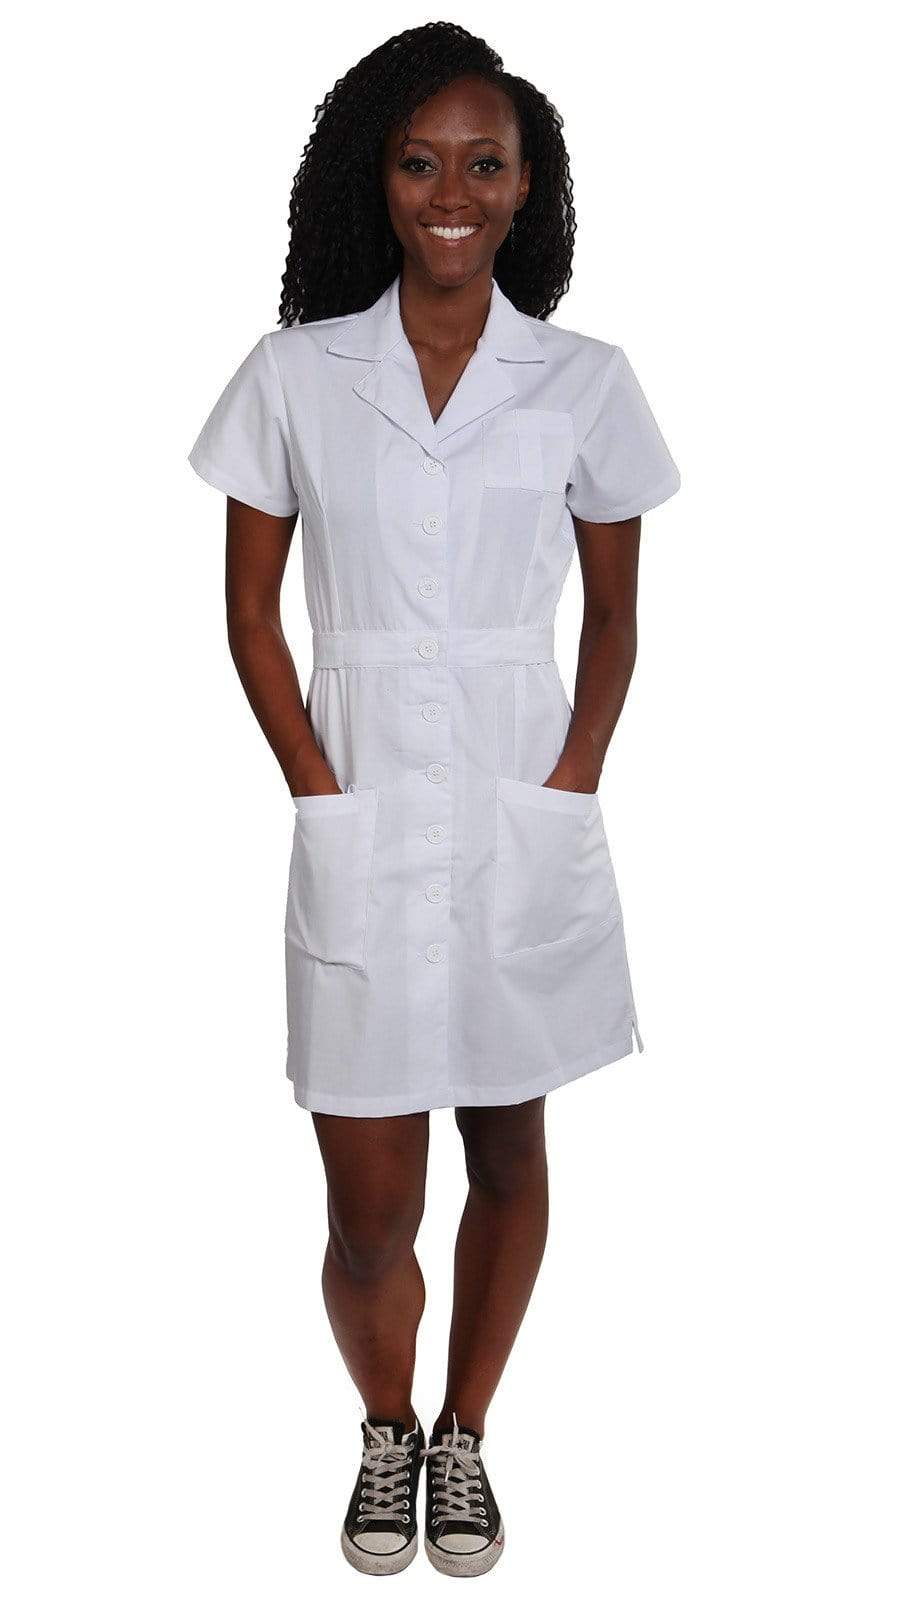 https://dressamed.com/cdn/shop/products/dress-a-med-famous-nursing-school-graduation-dress-27727498895.jpg?v=1675386220